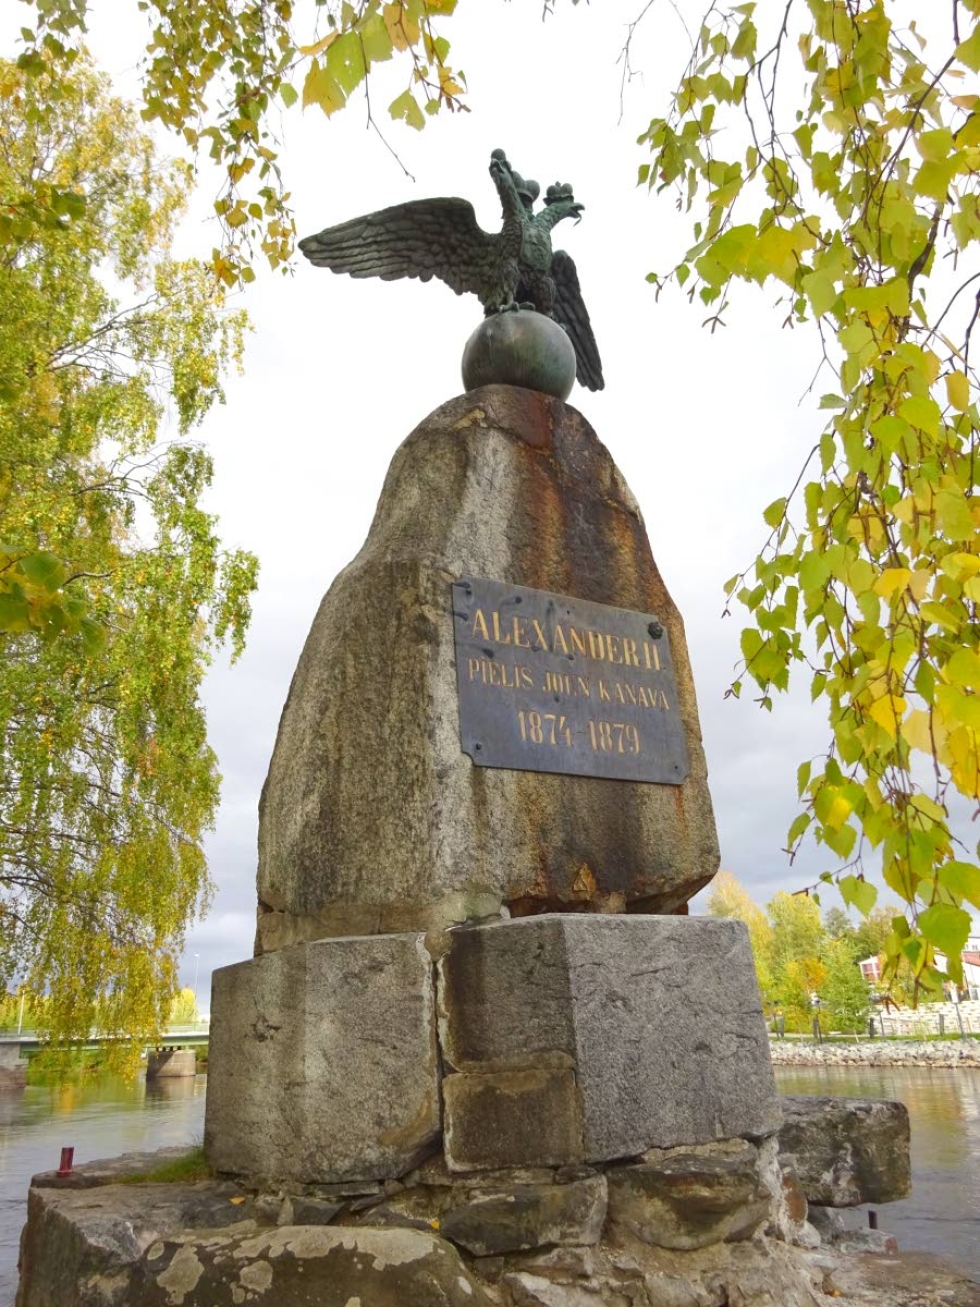 Pielisjoen kanavoinnin muistomerkki on Joensuun vanhin muistomerkki. Ennen vuotta 1879 paikalla poltettiin juhannuskokko.